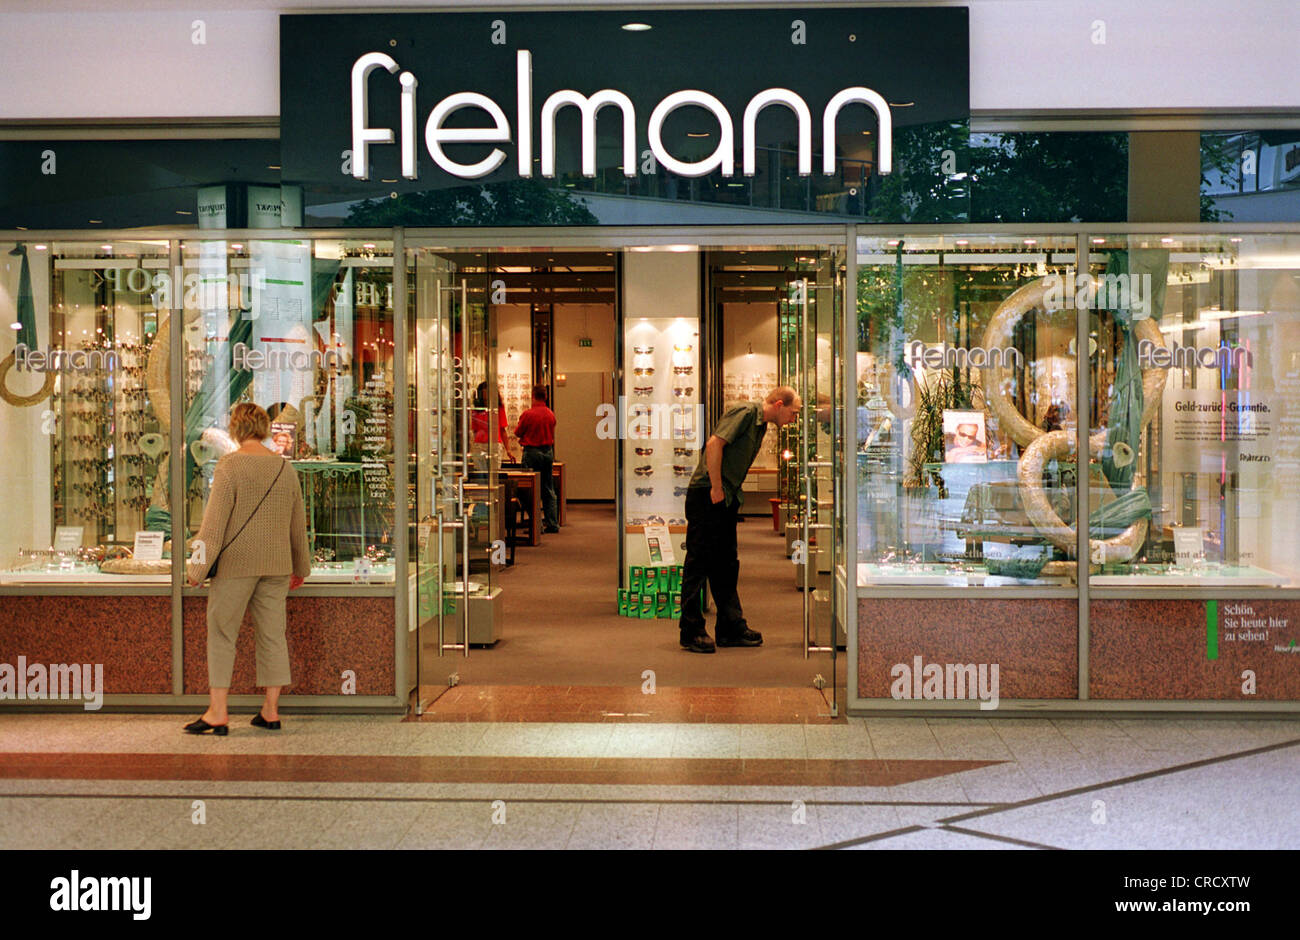 Filiale der optischen Kette Fielmann Stockfotografie - Alamy